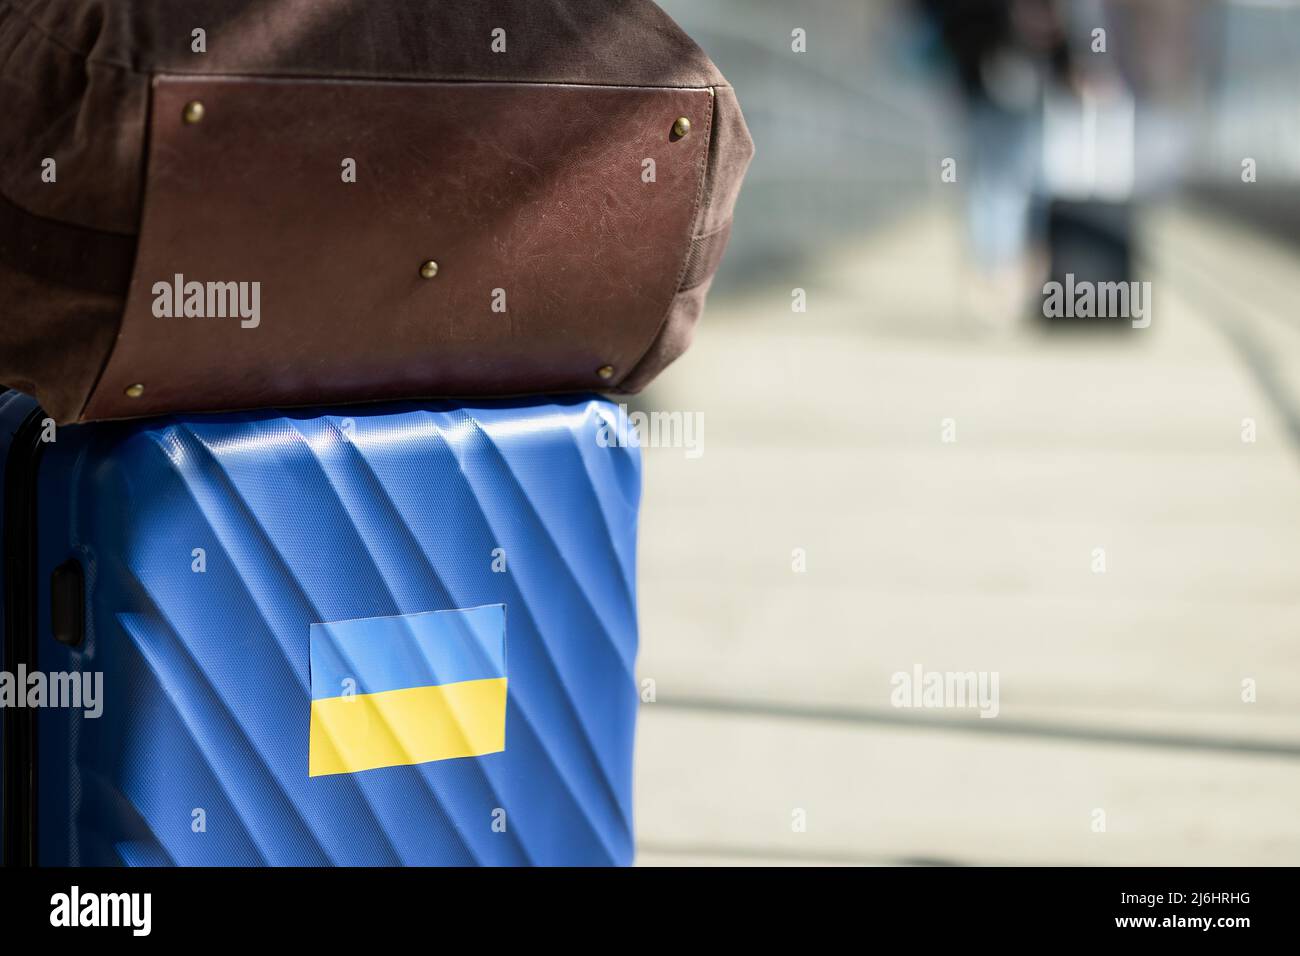 Koffer auf der Bahn. Stehe mit der Ukraine. Ukrainisches Volk, das aus dem Krieg ausscheide. Konzept der ukrainischen Flüchtlinge. Stockfoto